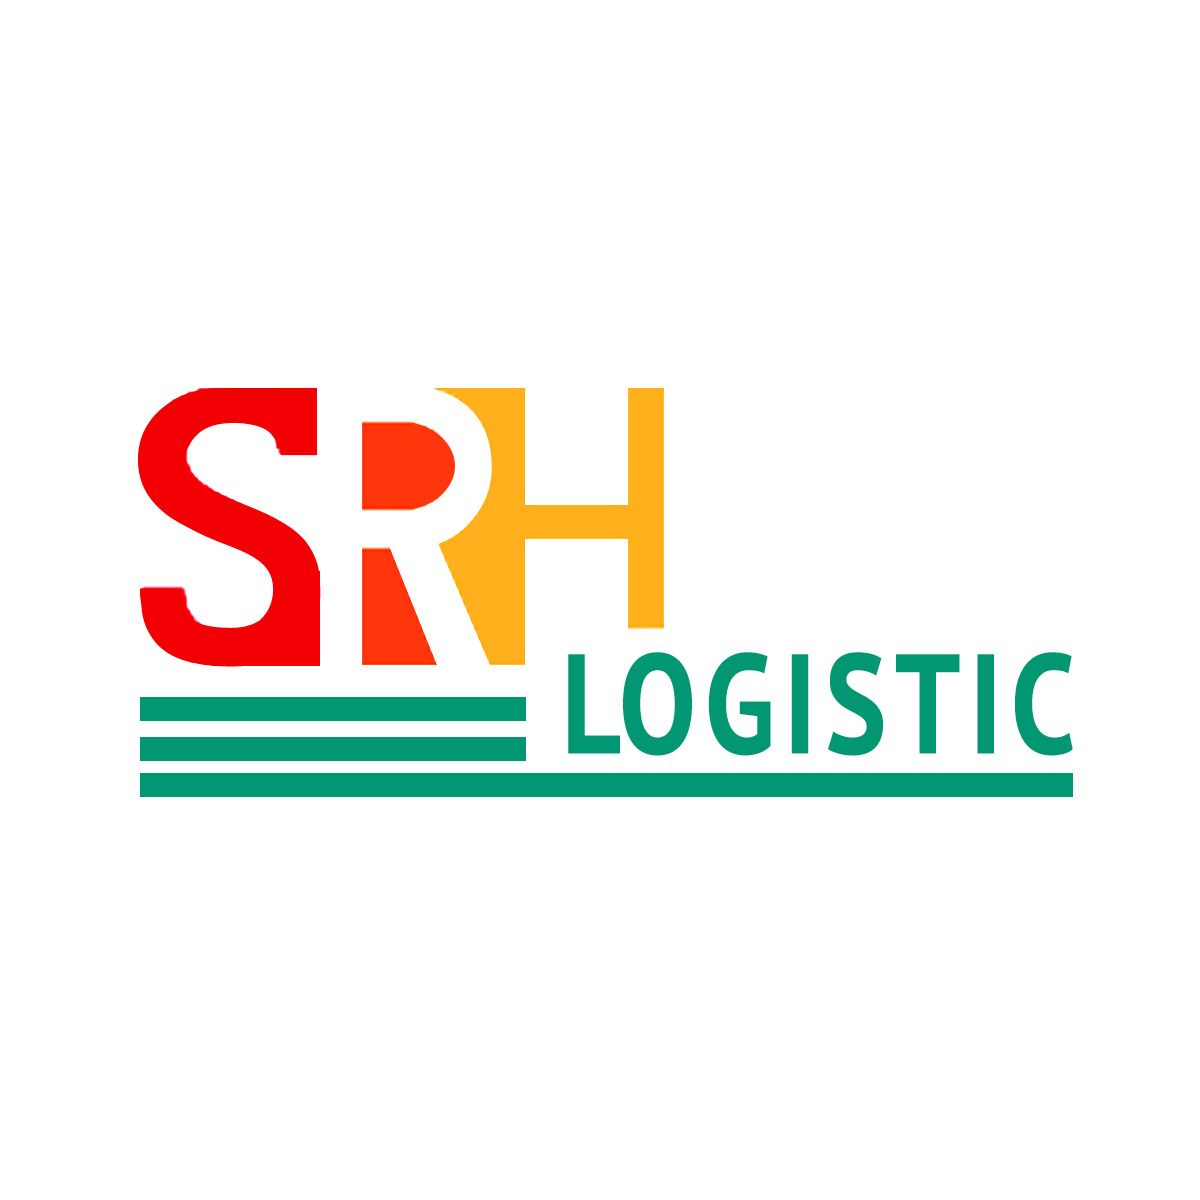 SRH Logistic